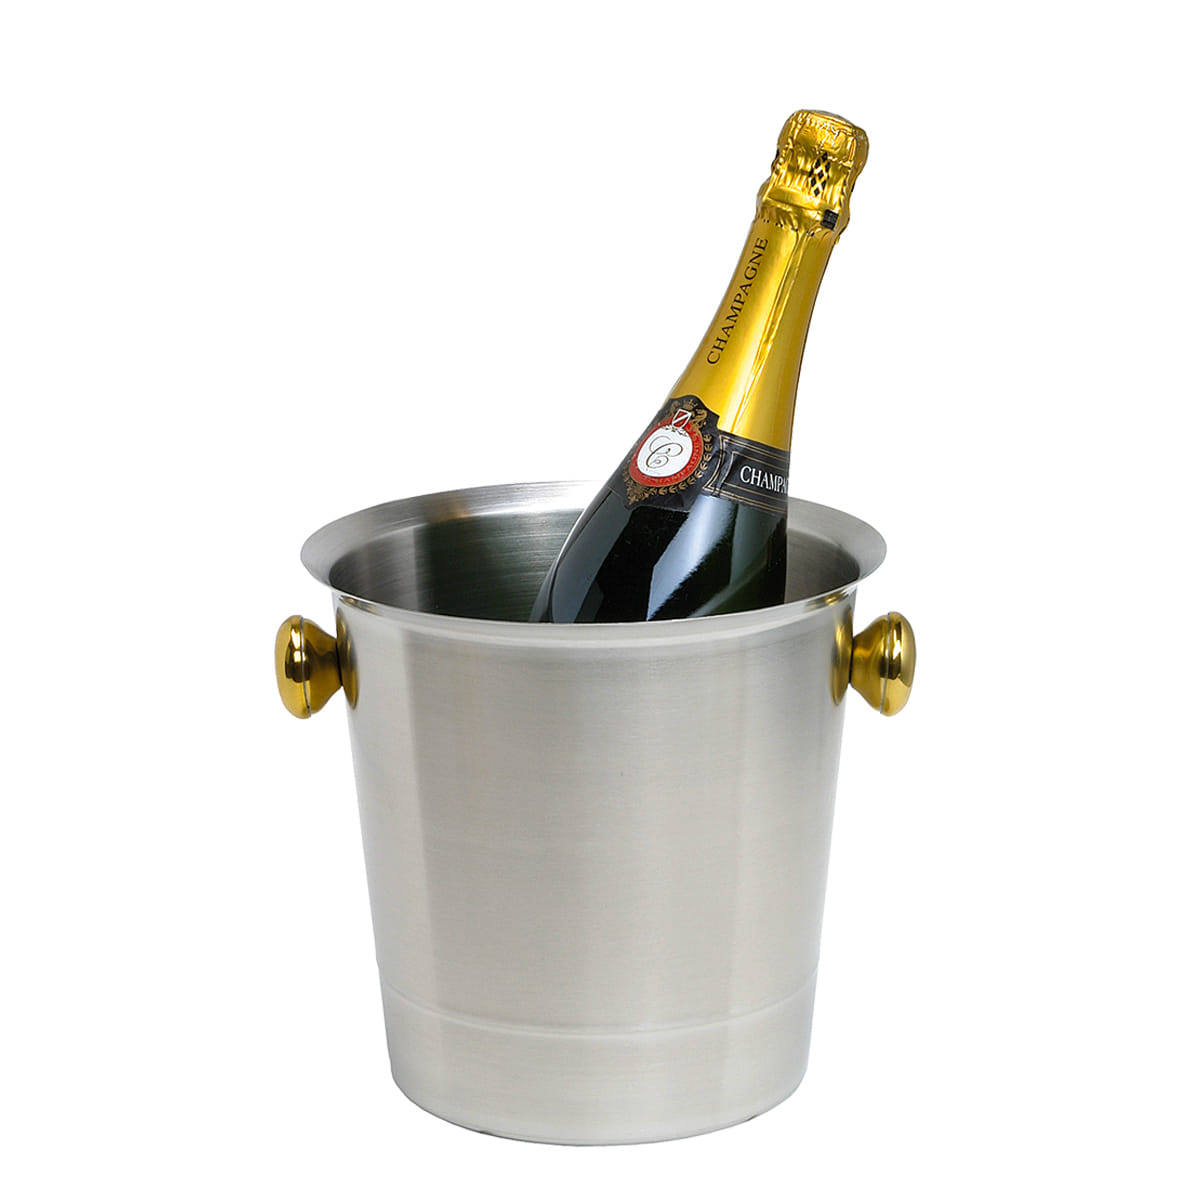 Silberner Champagnerkübel mit goldenen Griffen und einer Champagnerflasche im Kübel